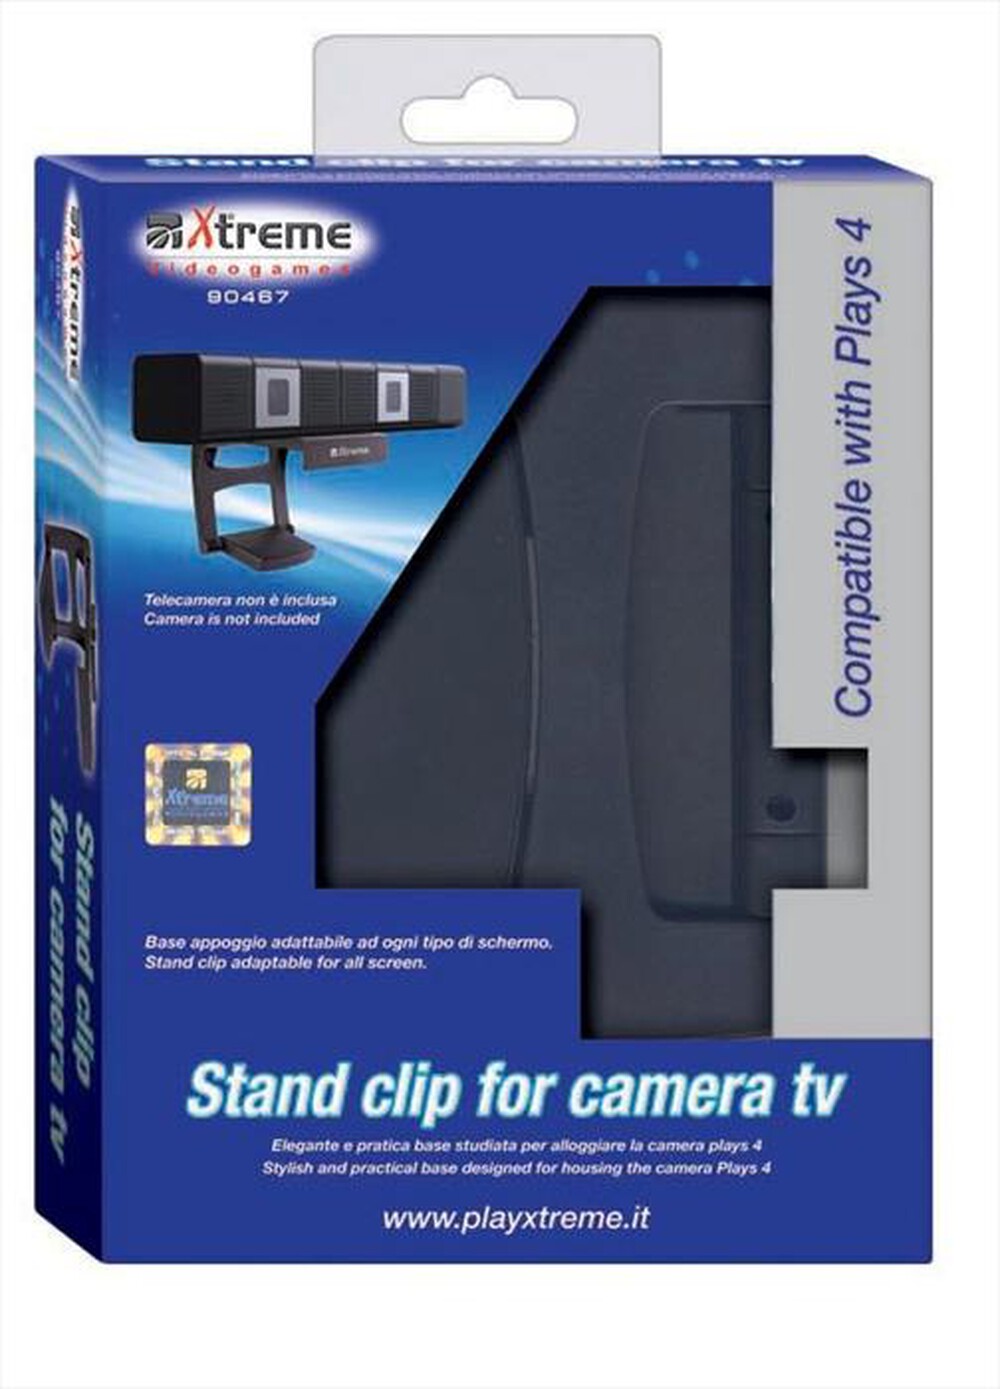 "XTREME - 90467 - PS4 Stand Clip per Camera TV"